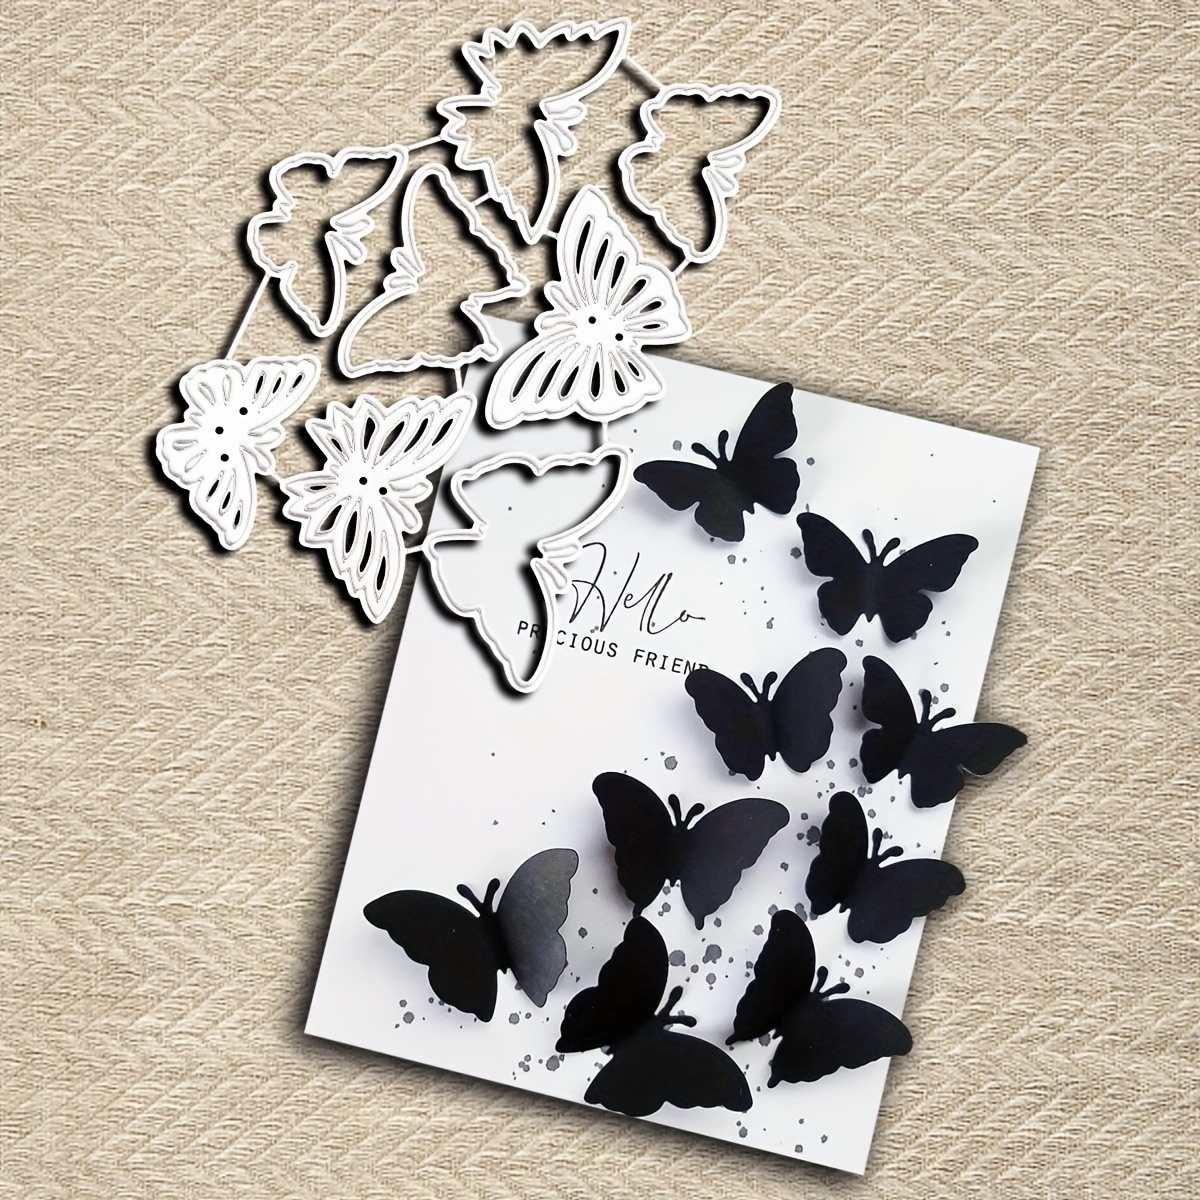 Die Cuts for Card Making, Ouginx Animal Butterfly Flower Metal Cutting Dies  DIY Die Cutters Die Stencils for Scrapbooking, Embossing & More 